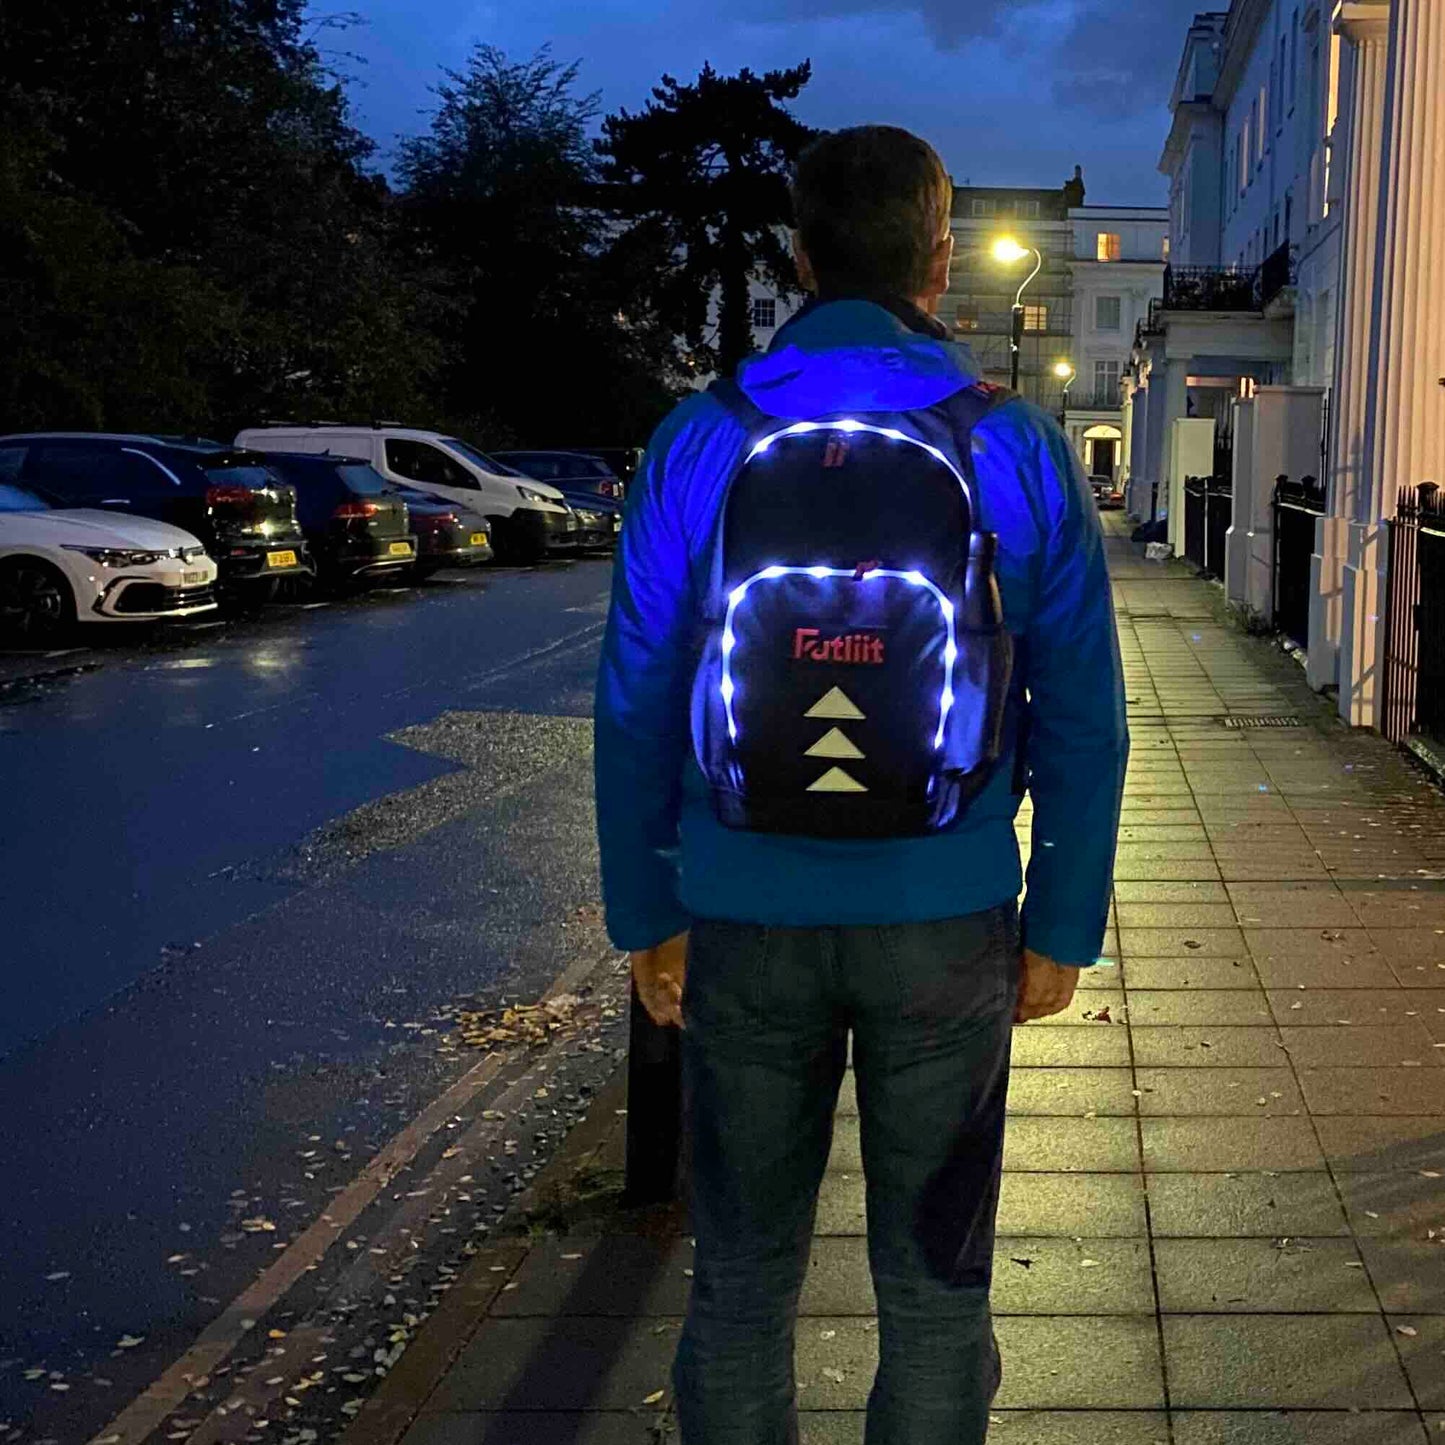 Man wearing Futliit LED backpack in the dark